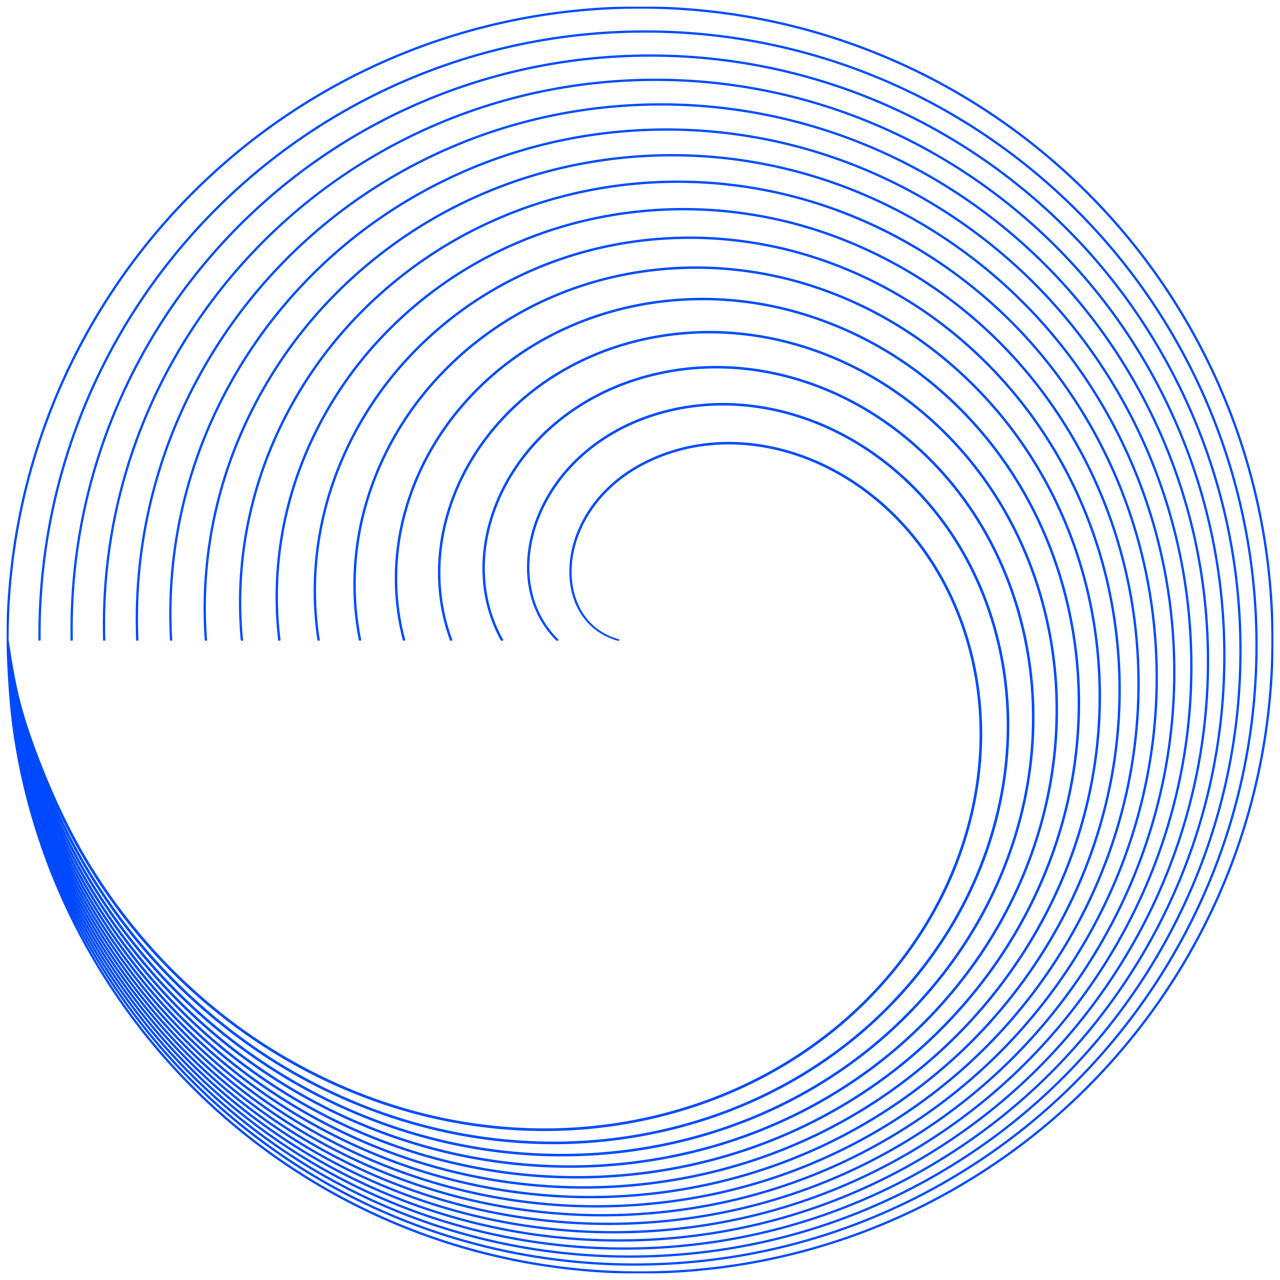 akouOeido, pictogramme "voir" sous forme de spirale qui évoque un oeil